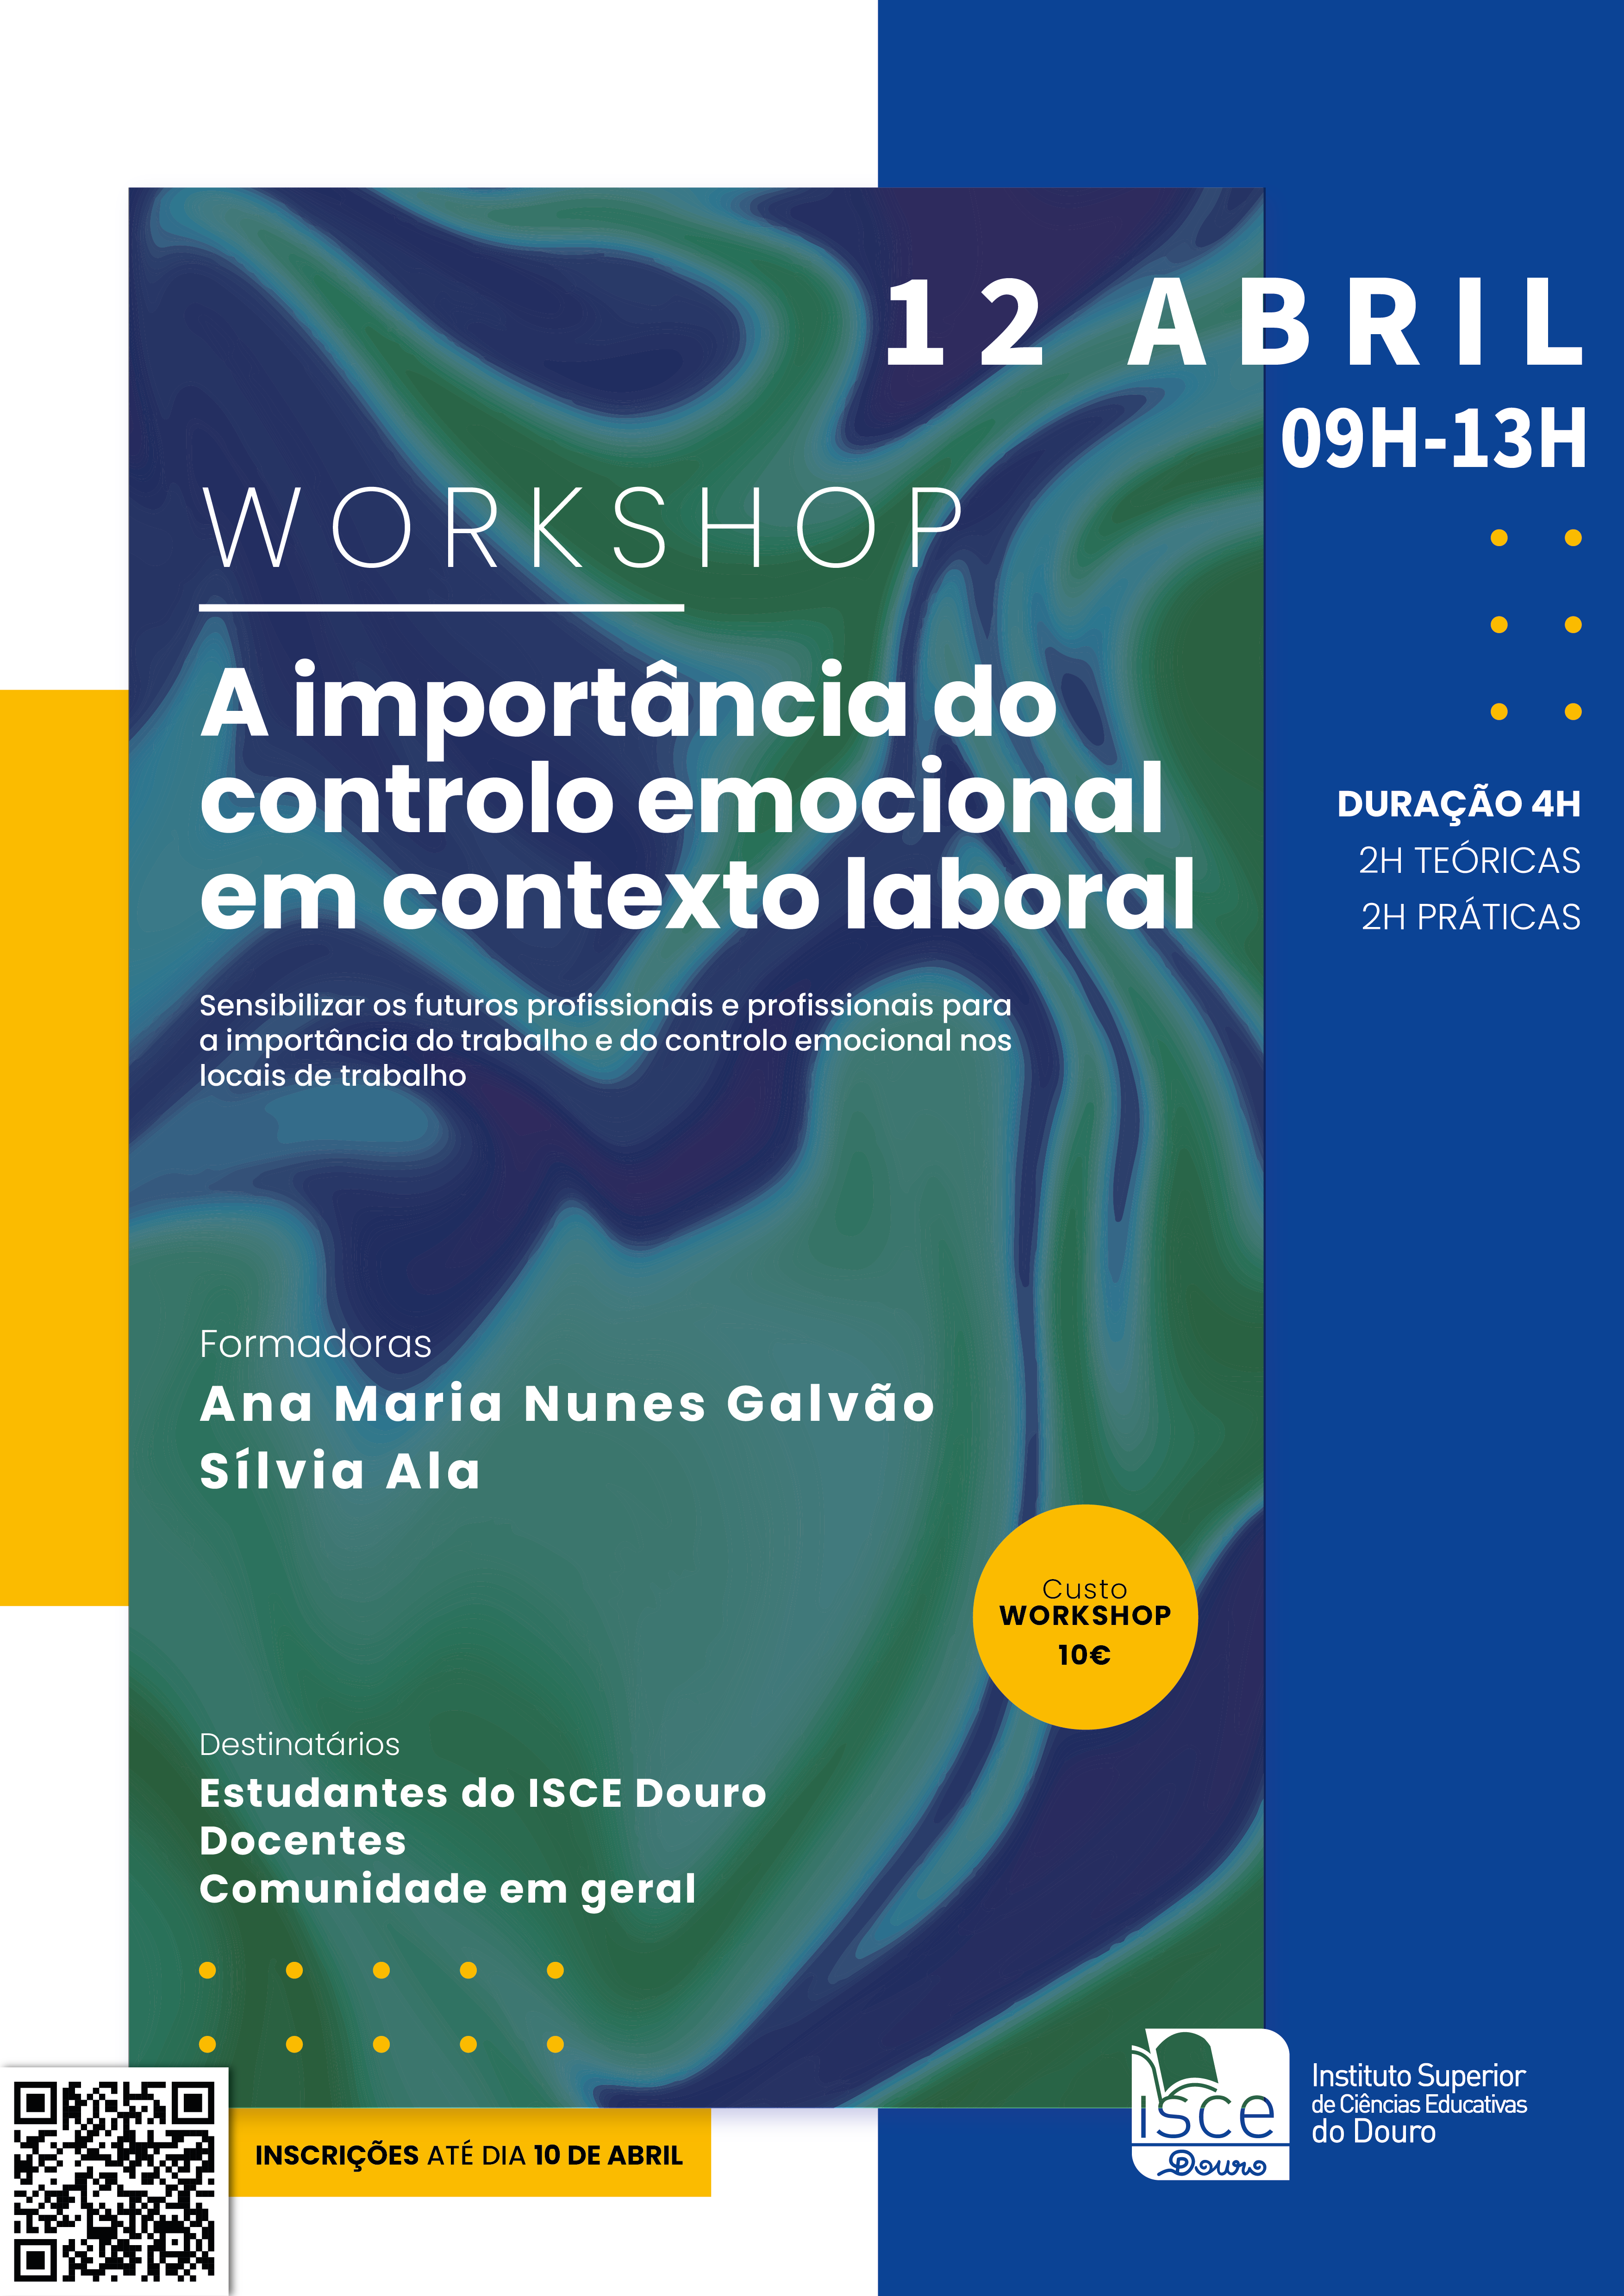 Workshop | A importância do controlo emocional em contexto laboral